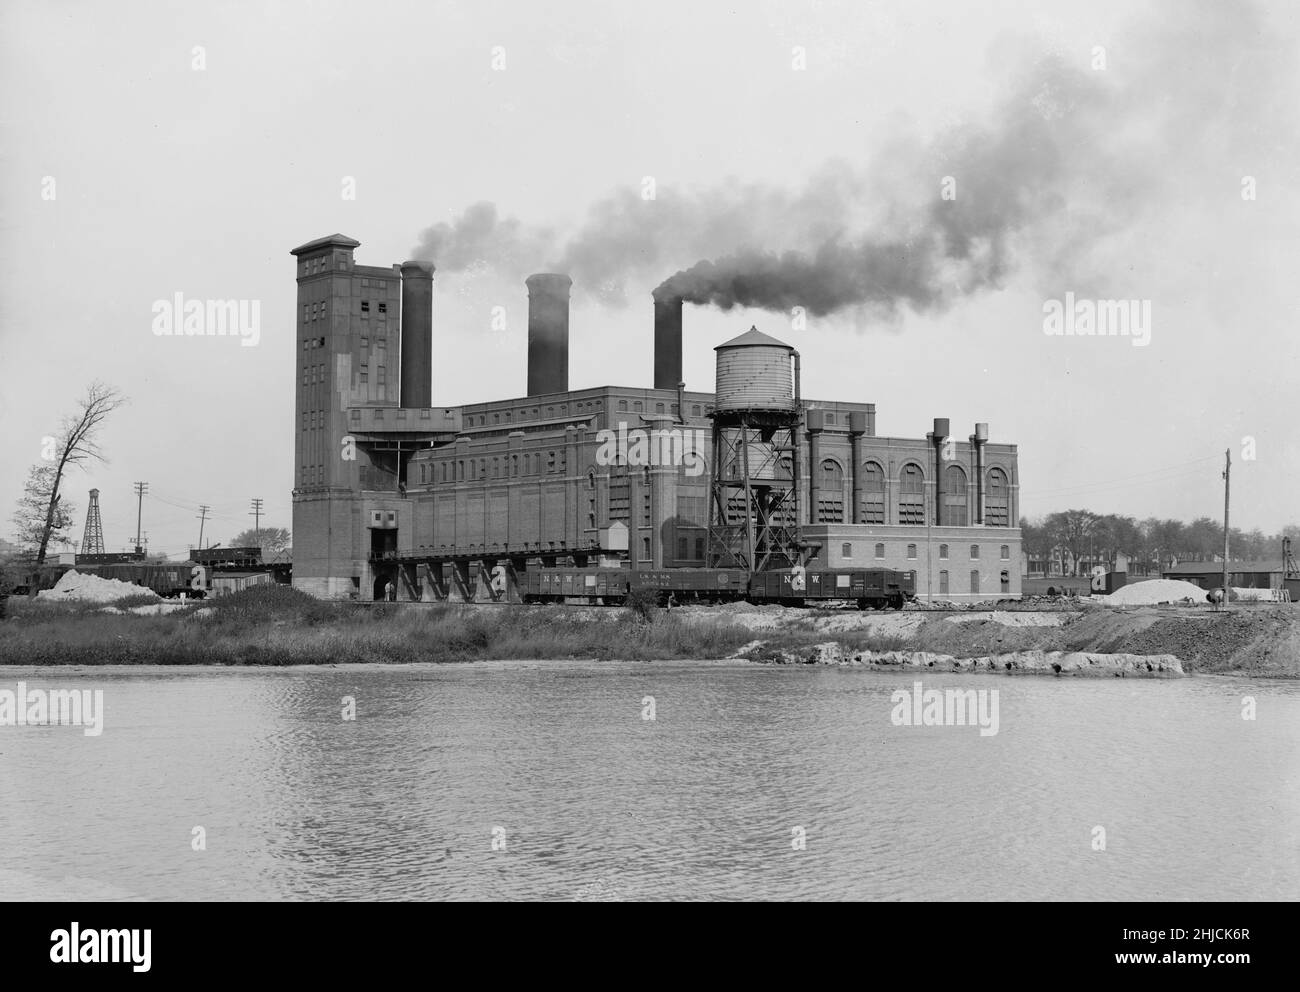 Edison Electric Plant (Detroit Edison Company), Detroit, Michigan.Photo de Detroit Publishing Co., c.1900-1910. Banque D'Images